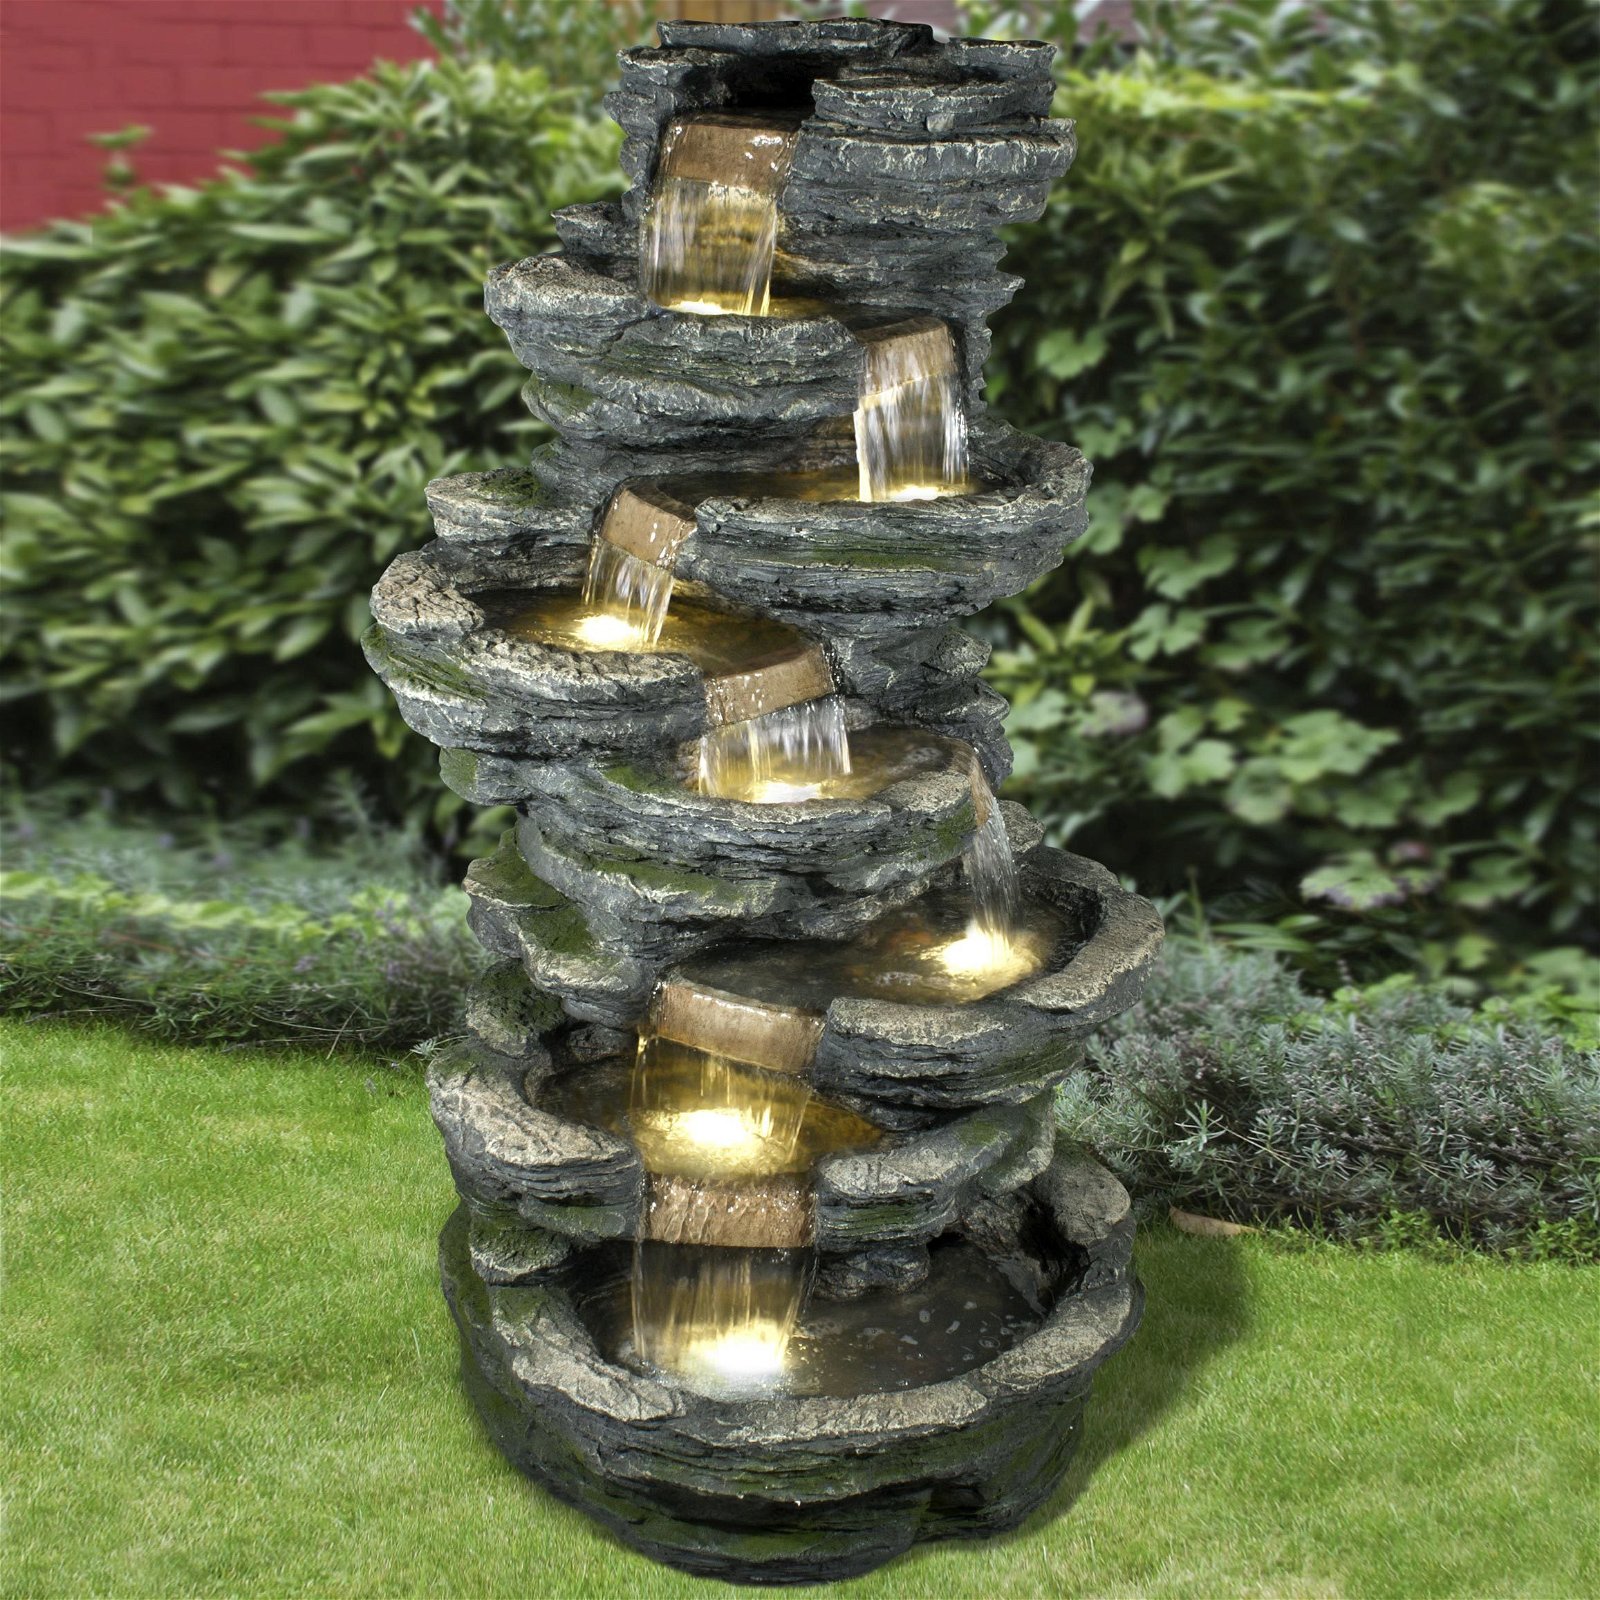 Gartenbrunnen inkl. Pumpe & Licht, Echtholzoptik, 78 x 78 x 147 cm